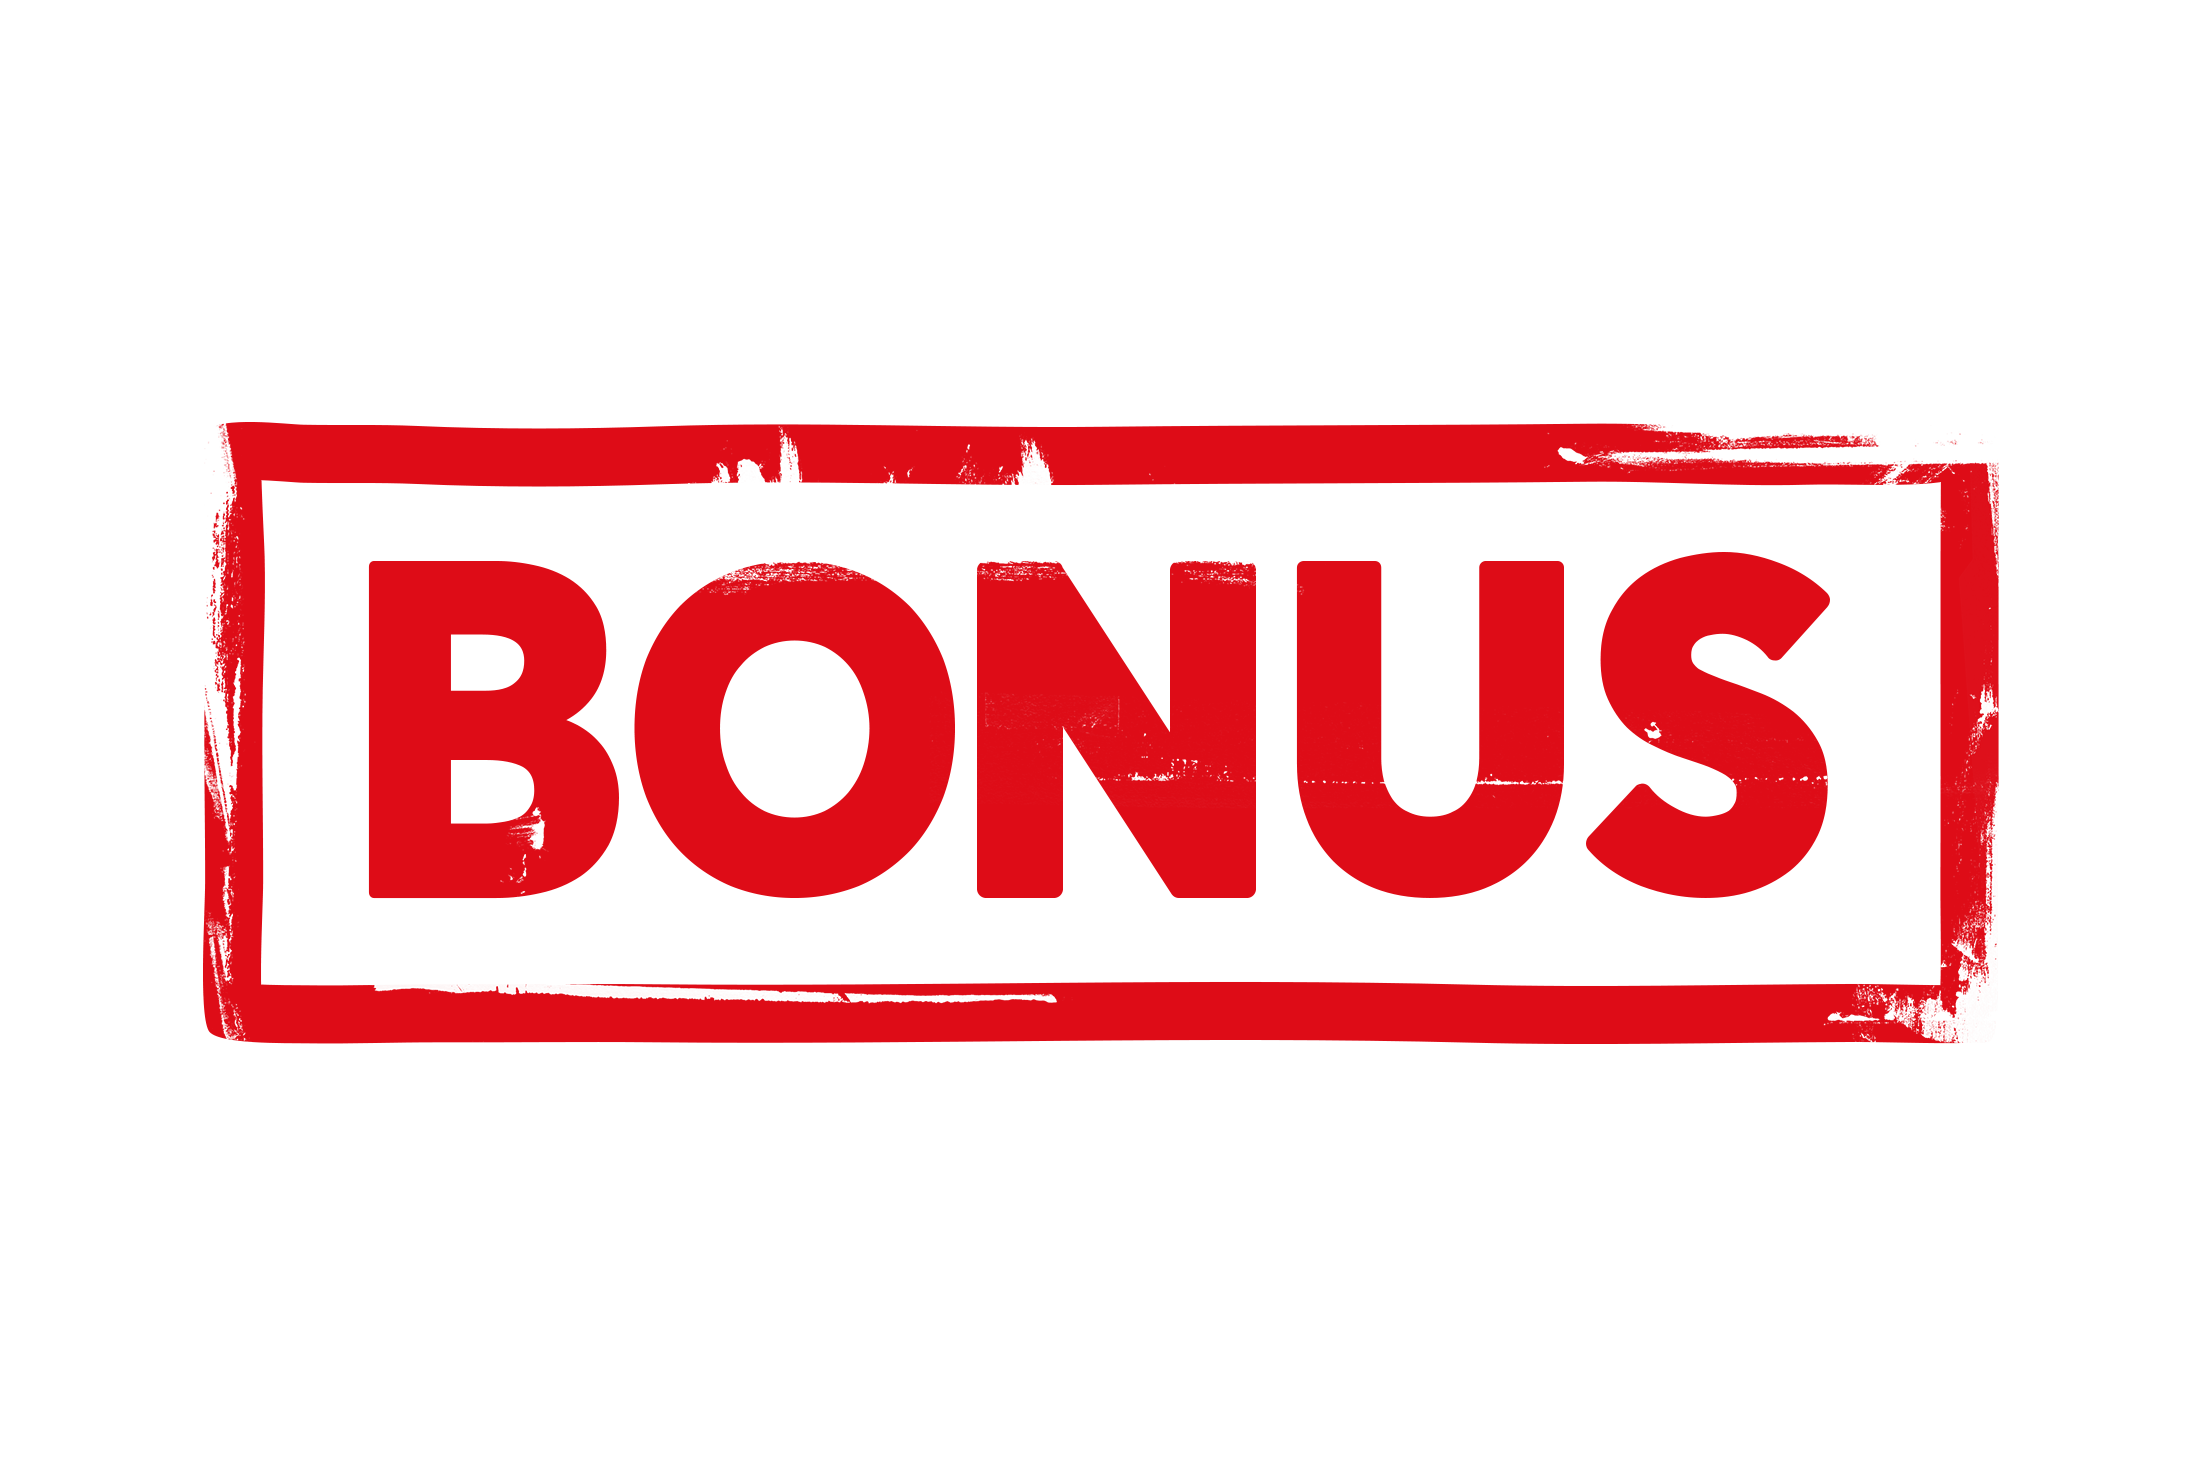 bonus png